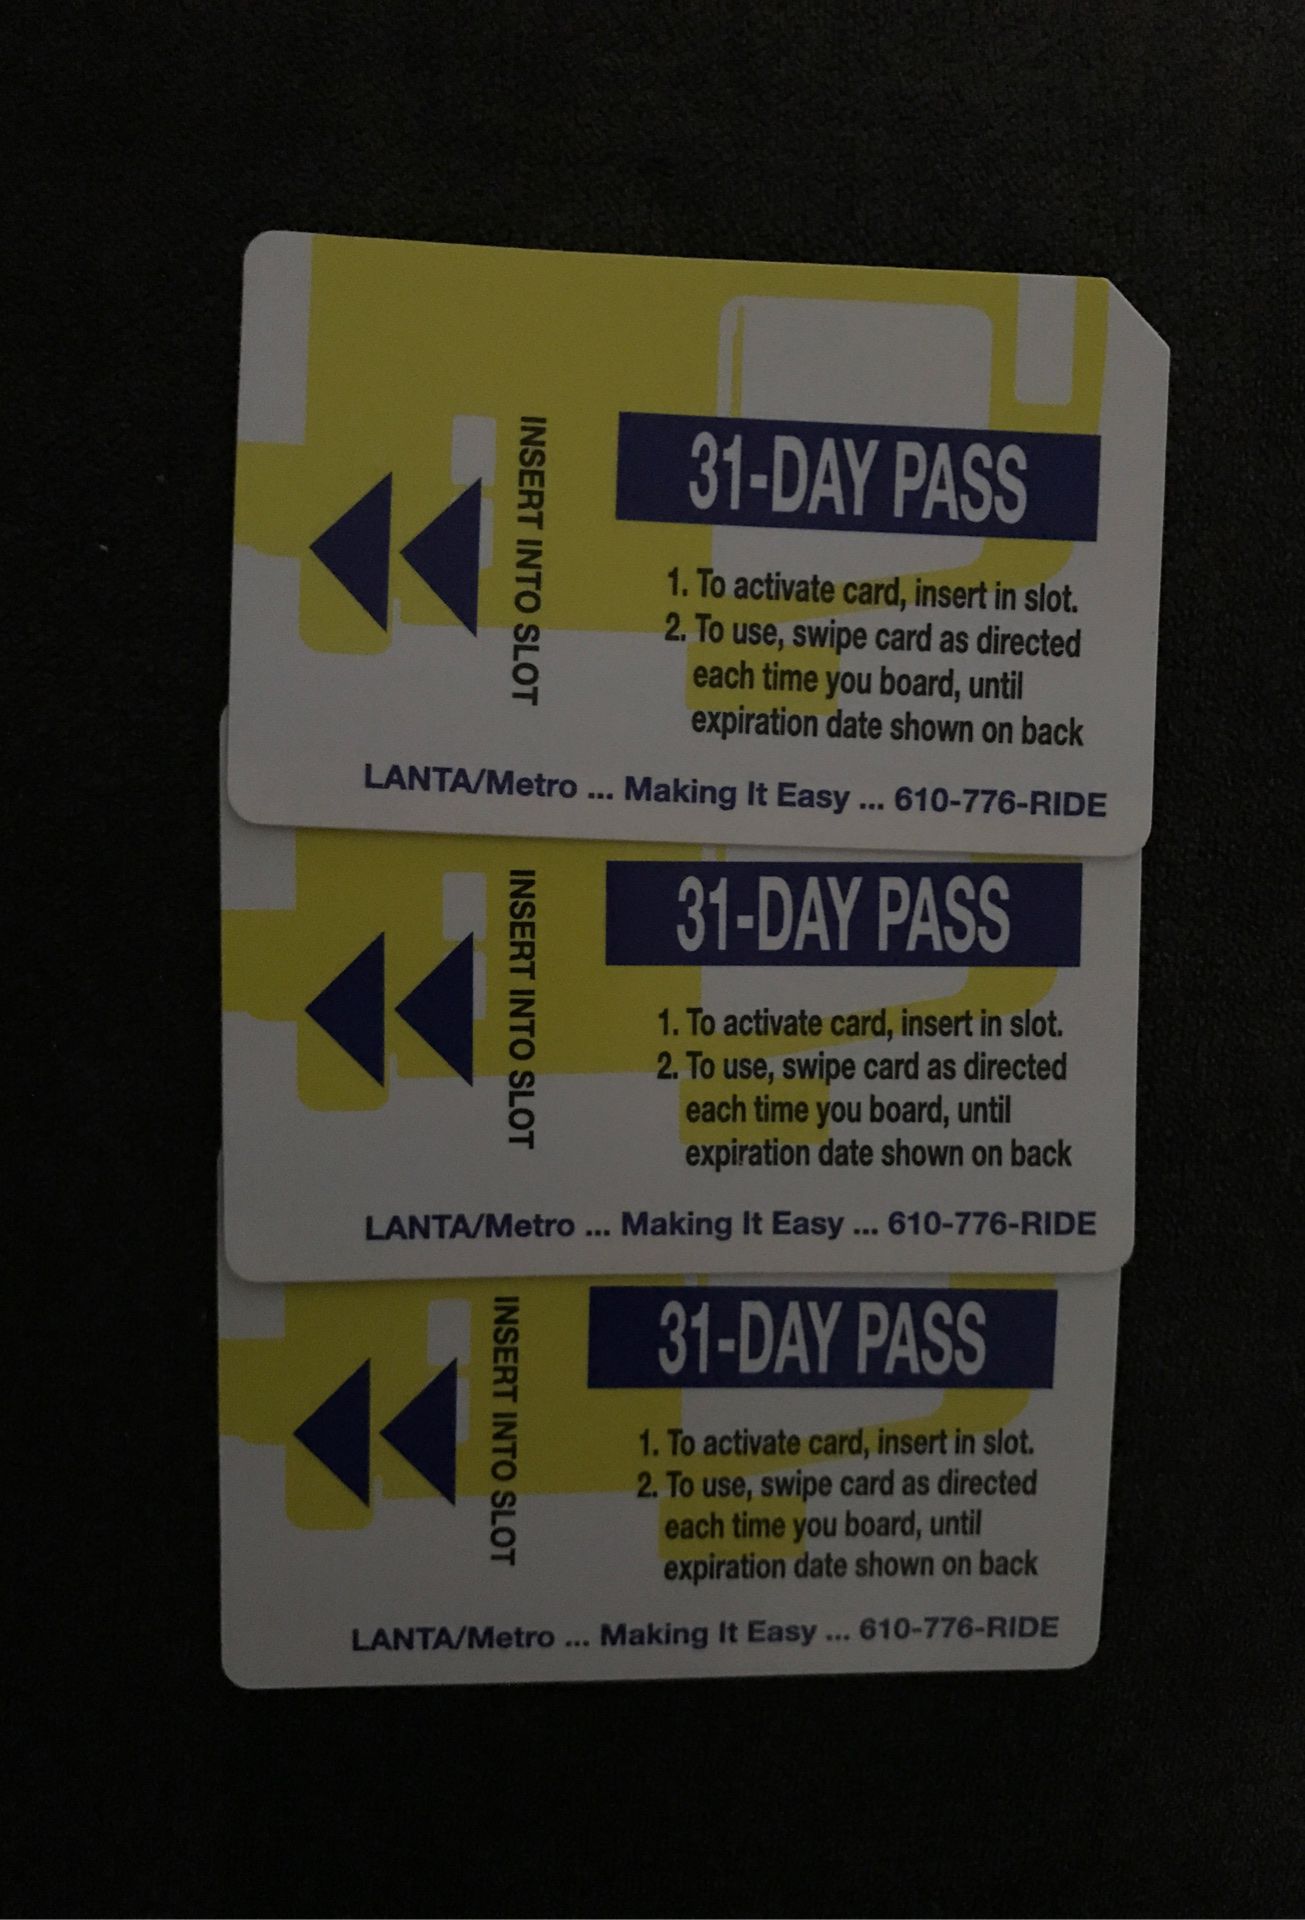 Bus tickets